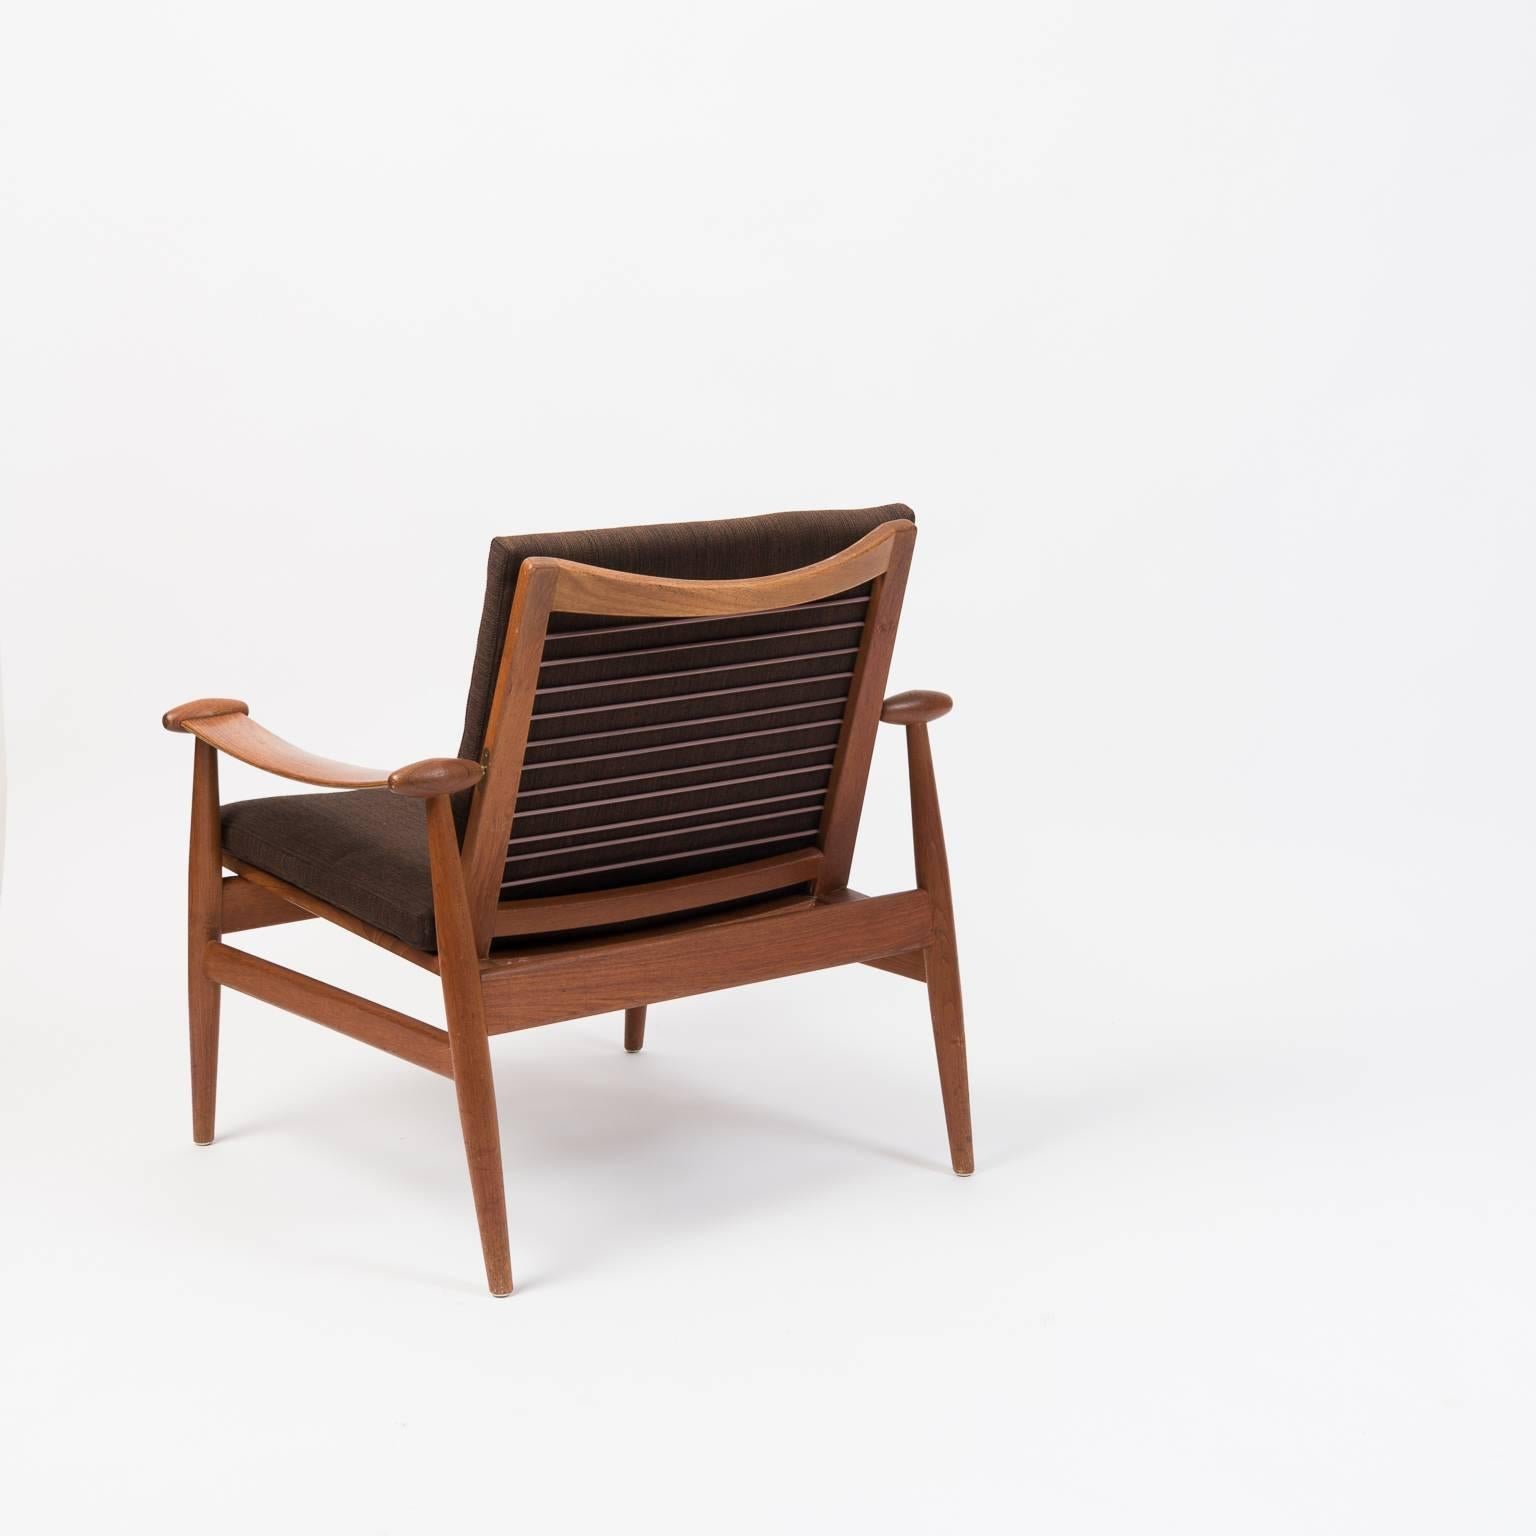 Danish Scandinavian Modern Spade Chair by Finn Juhl for France & Daverkosen